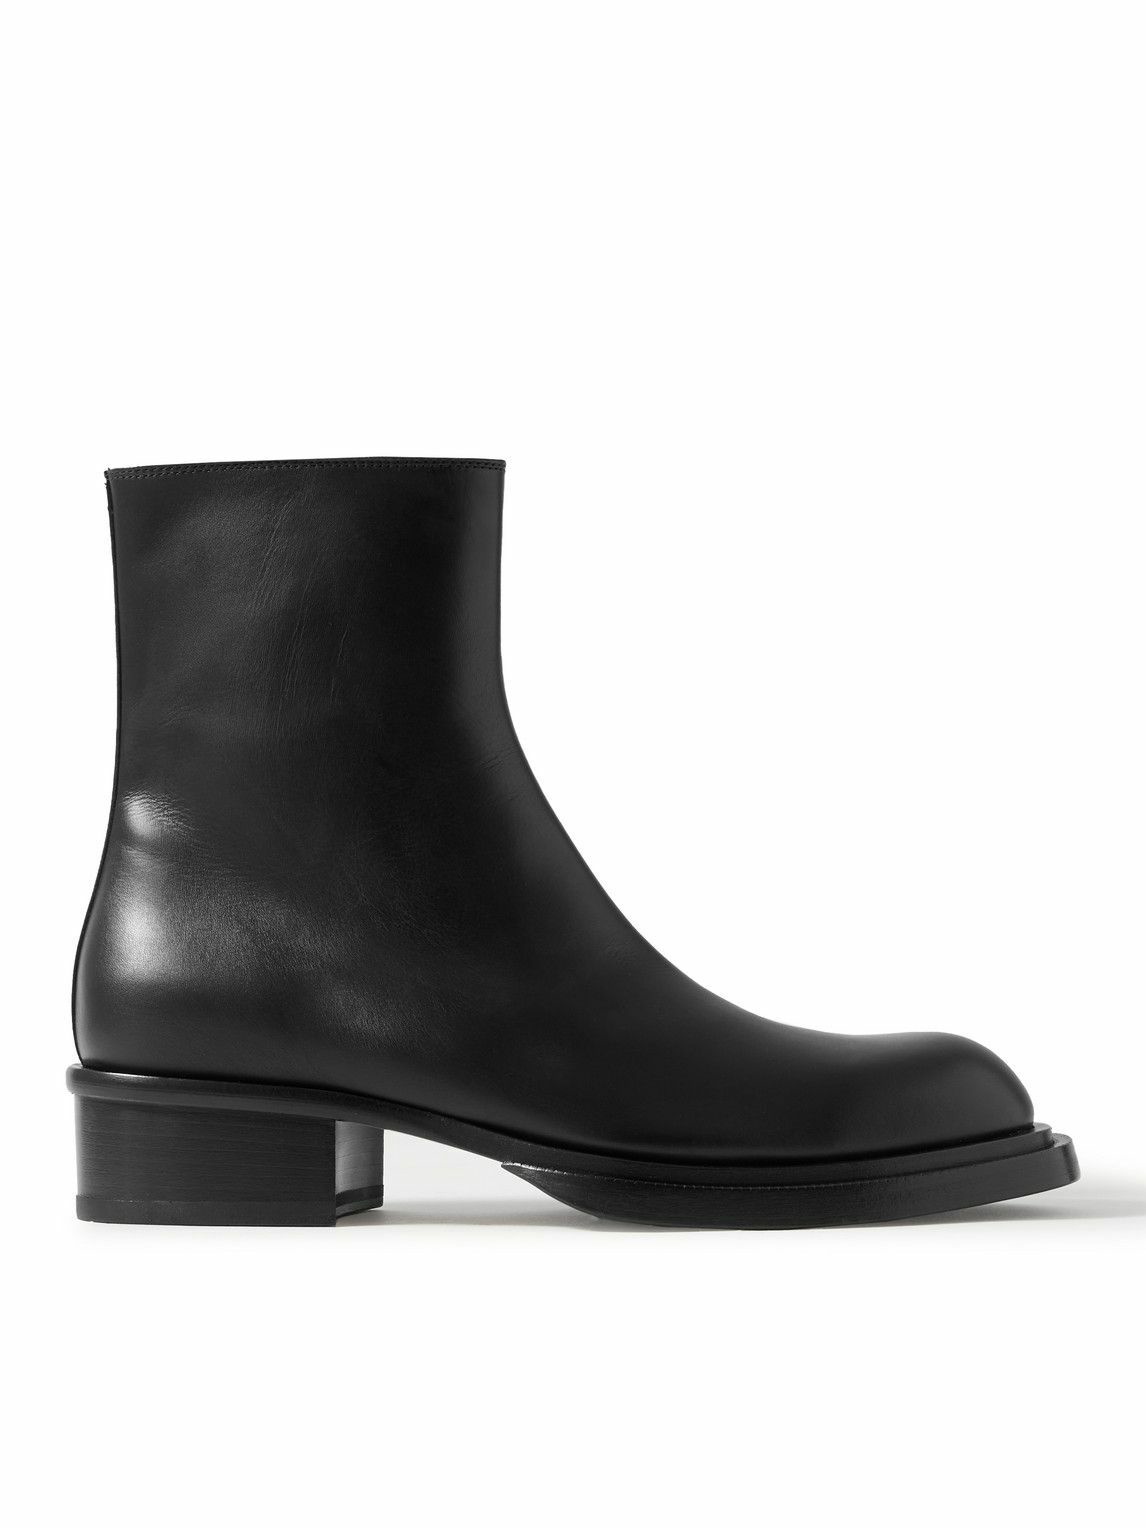 Alexander McQueen - Leather Boots - Black Alexander McQueen